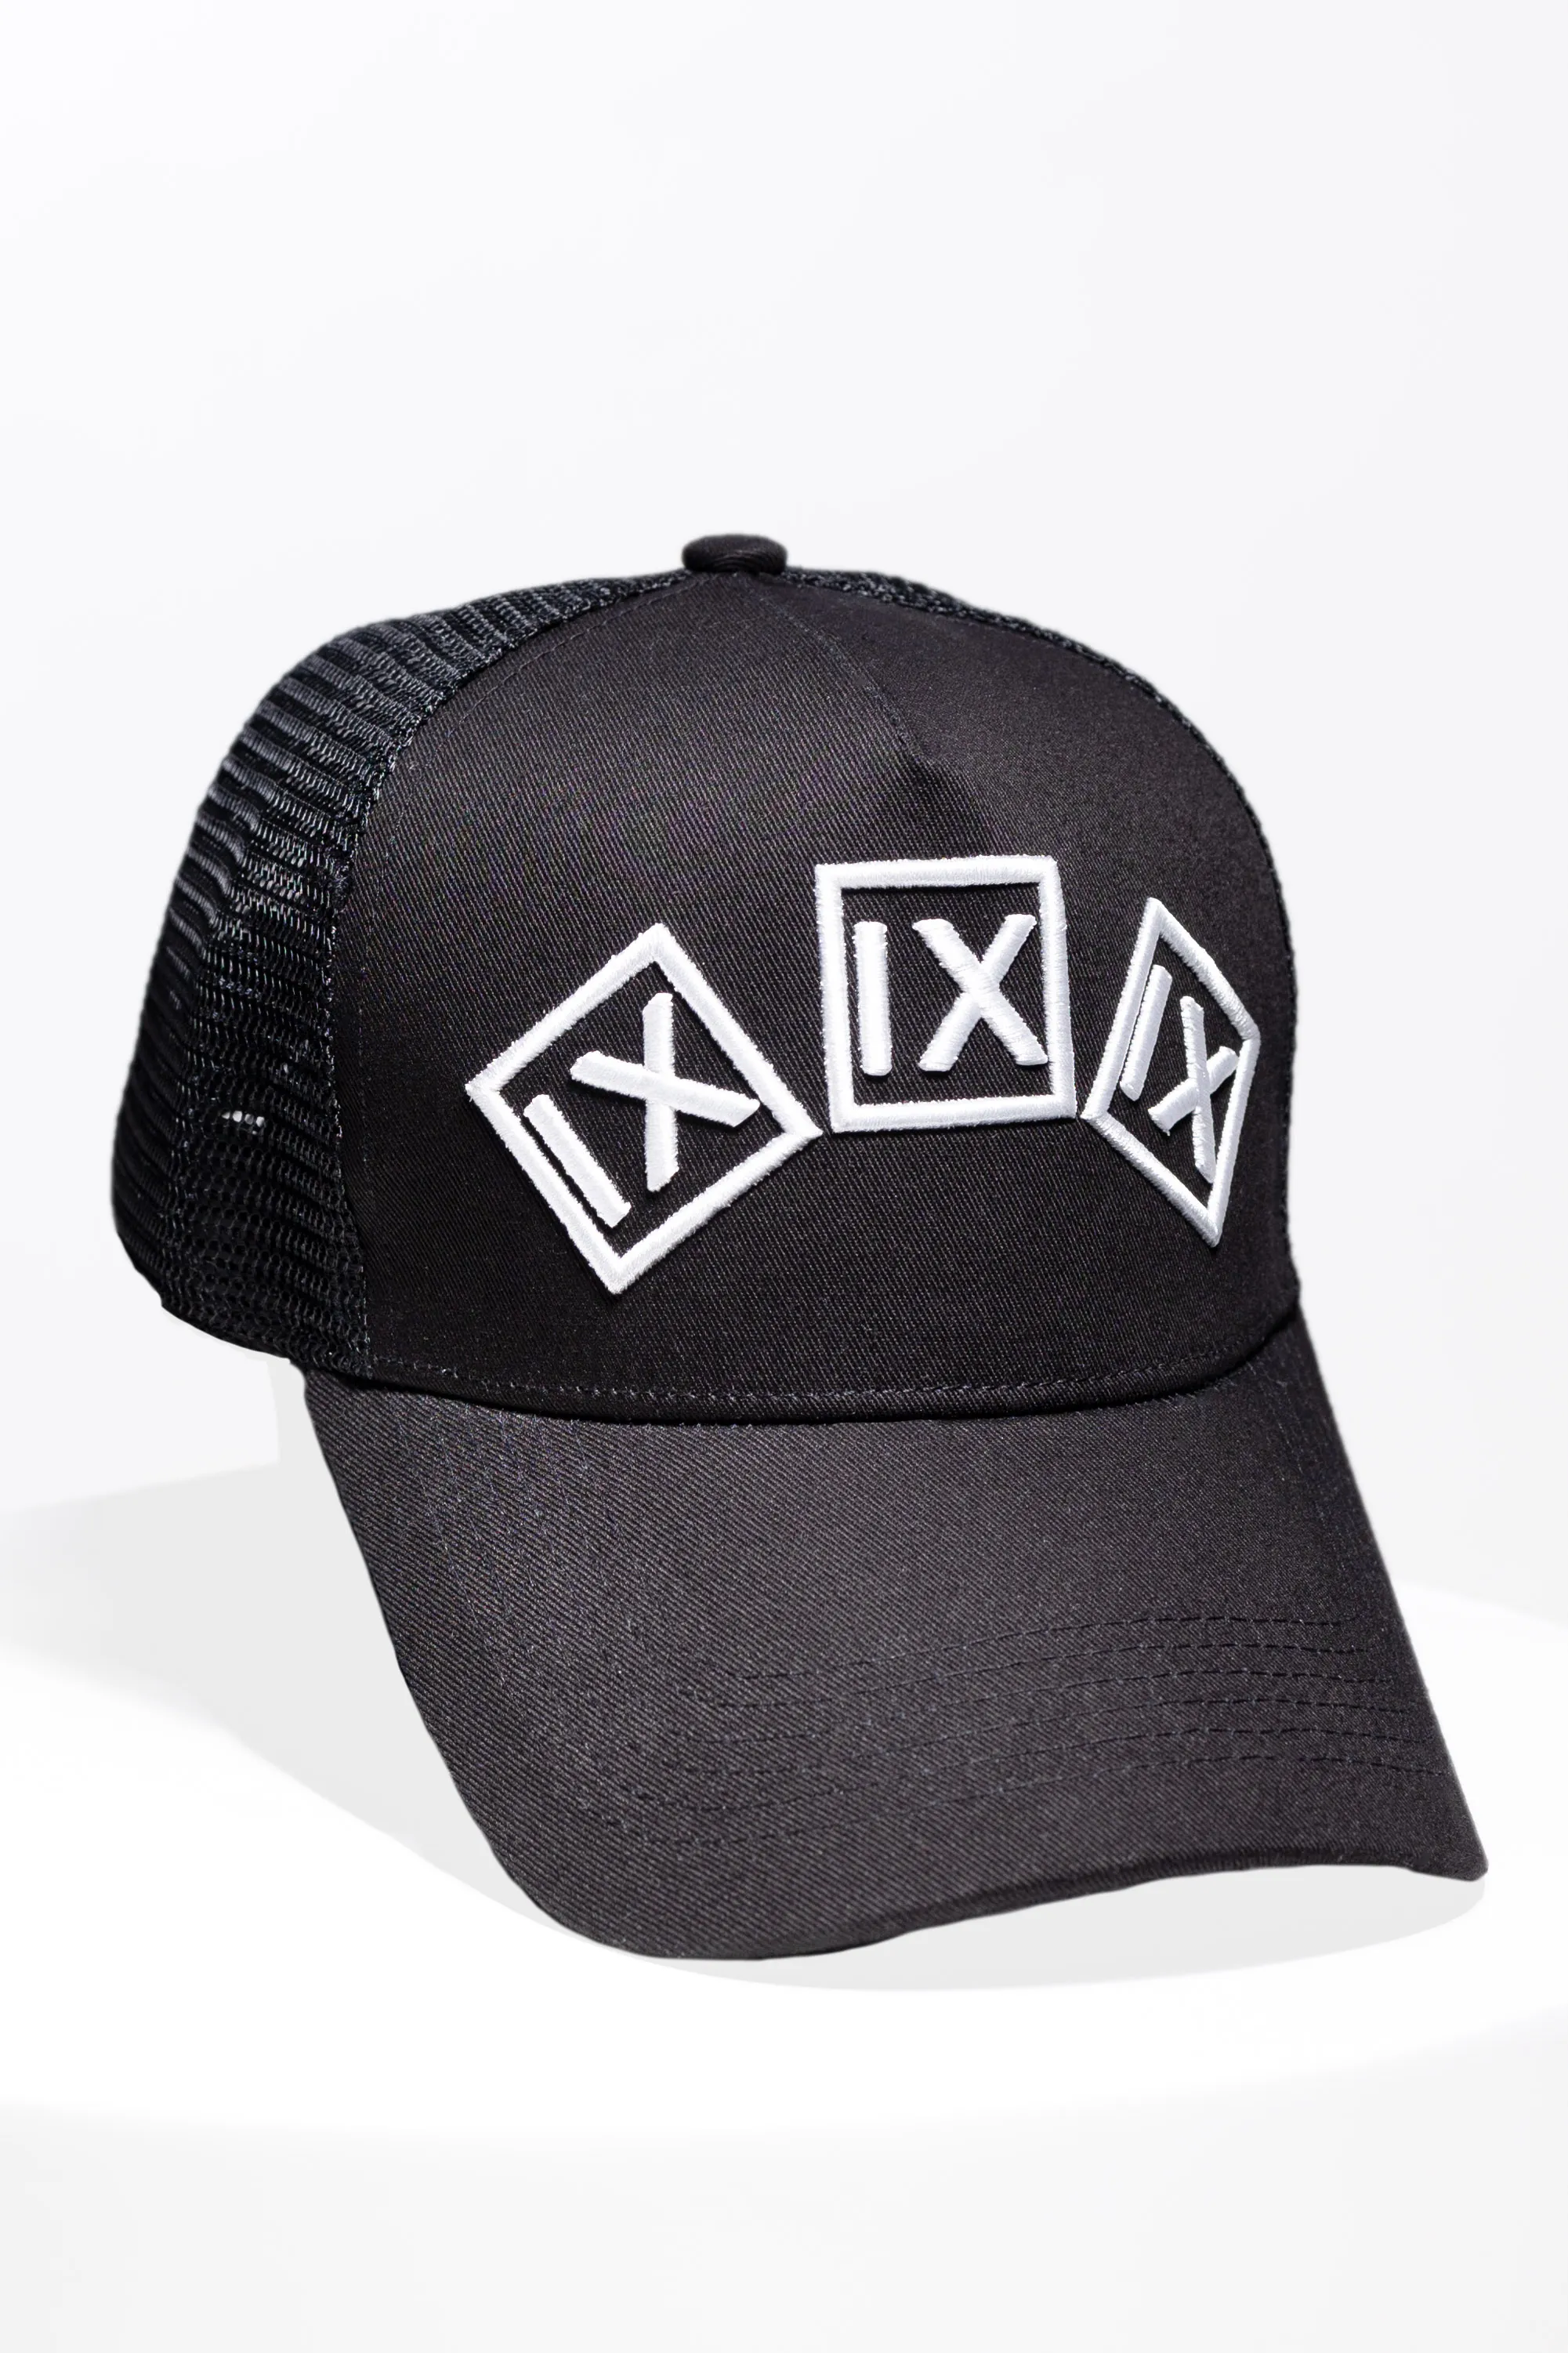 IX TRUCKER HAT